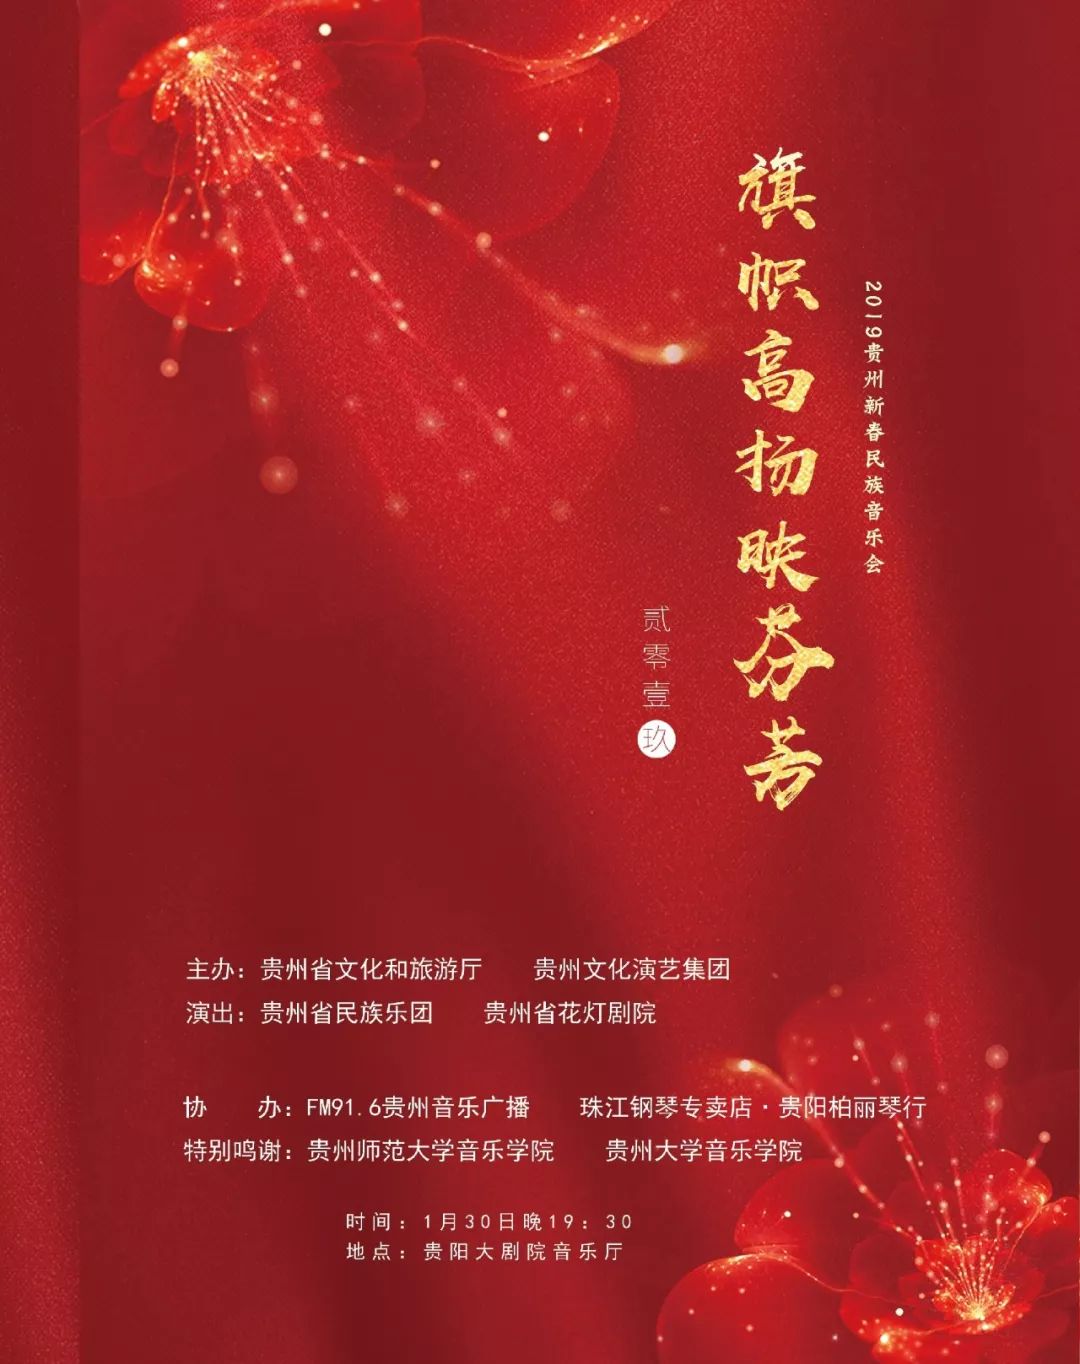 旗帜高扬映芬芳喜迎成立70周年2019贵州新春民族音乐会,1月